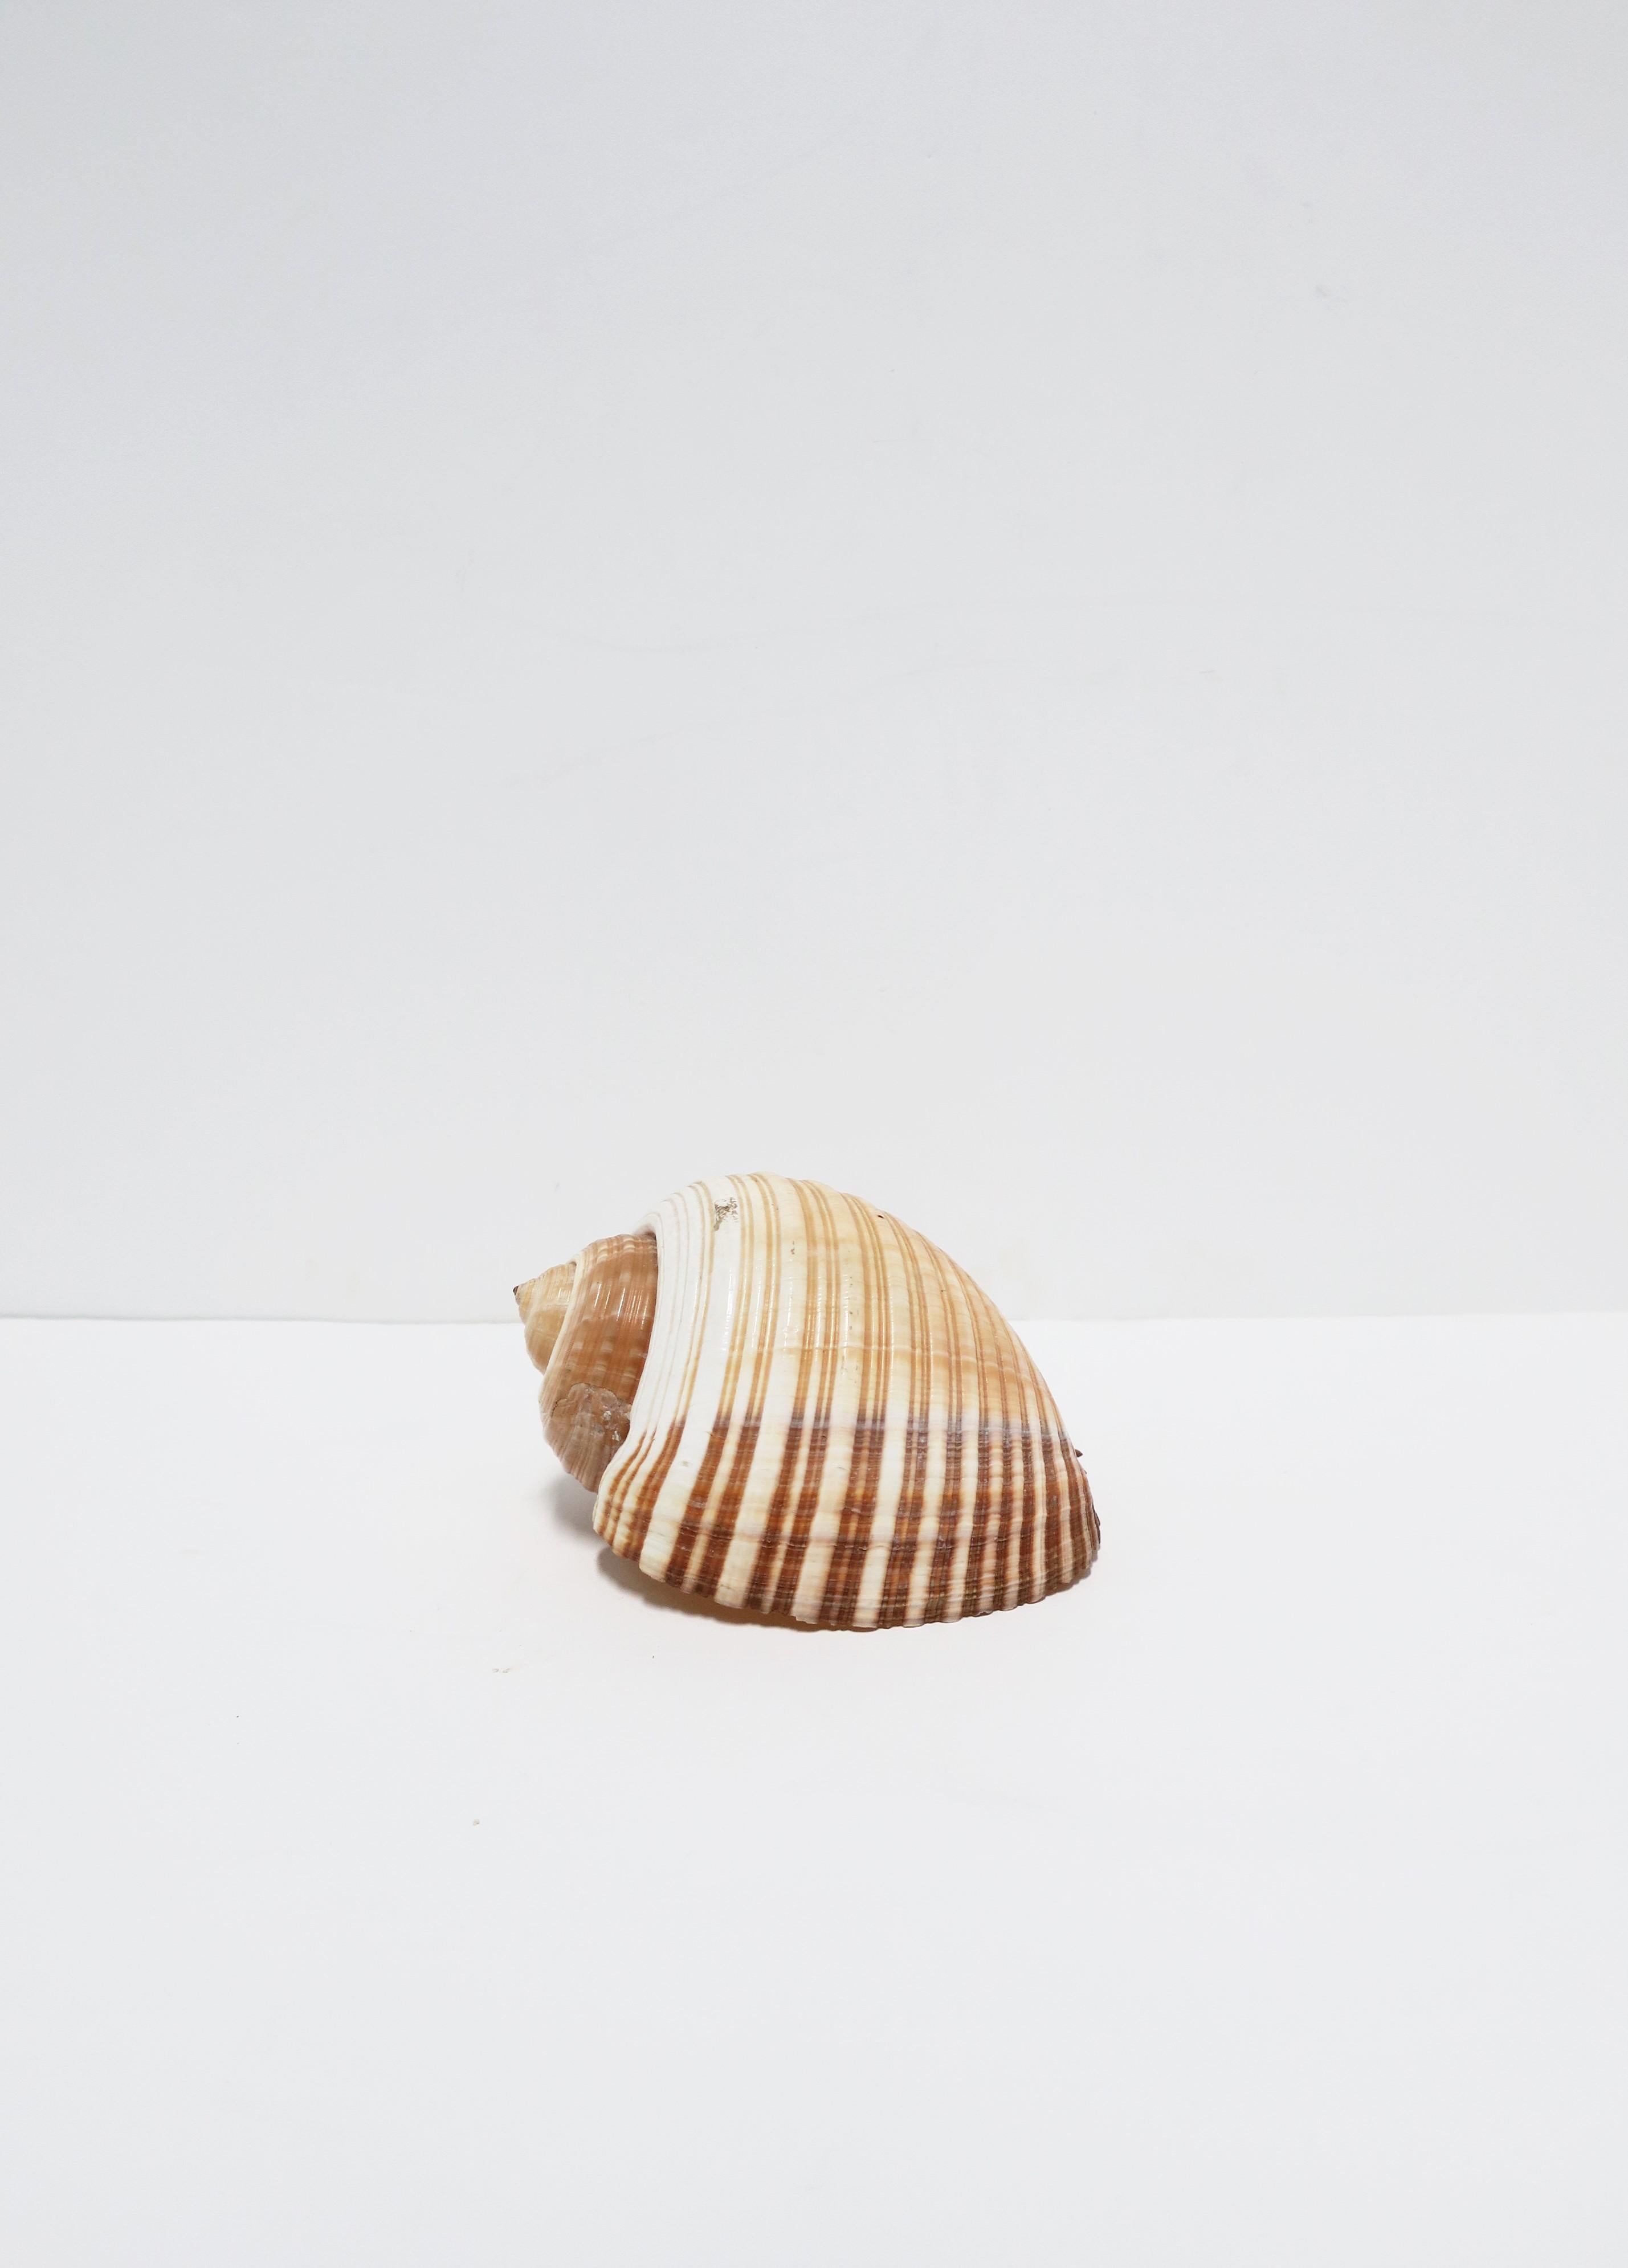 Seashell Sea Shell 5